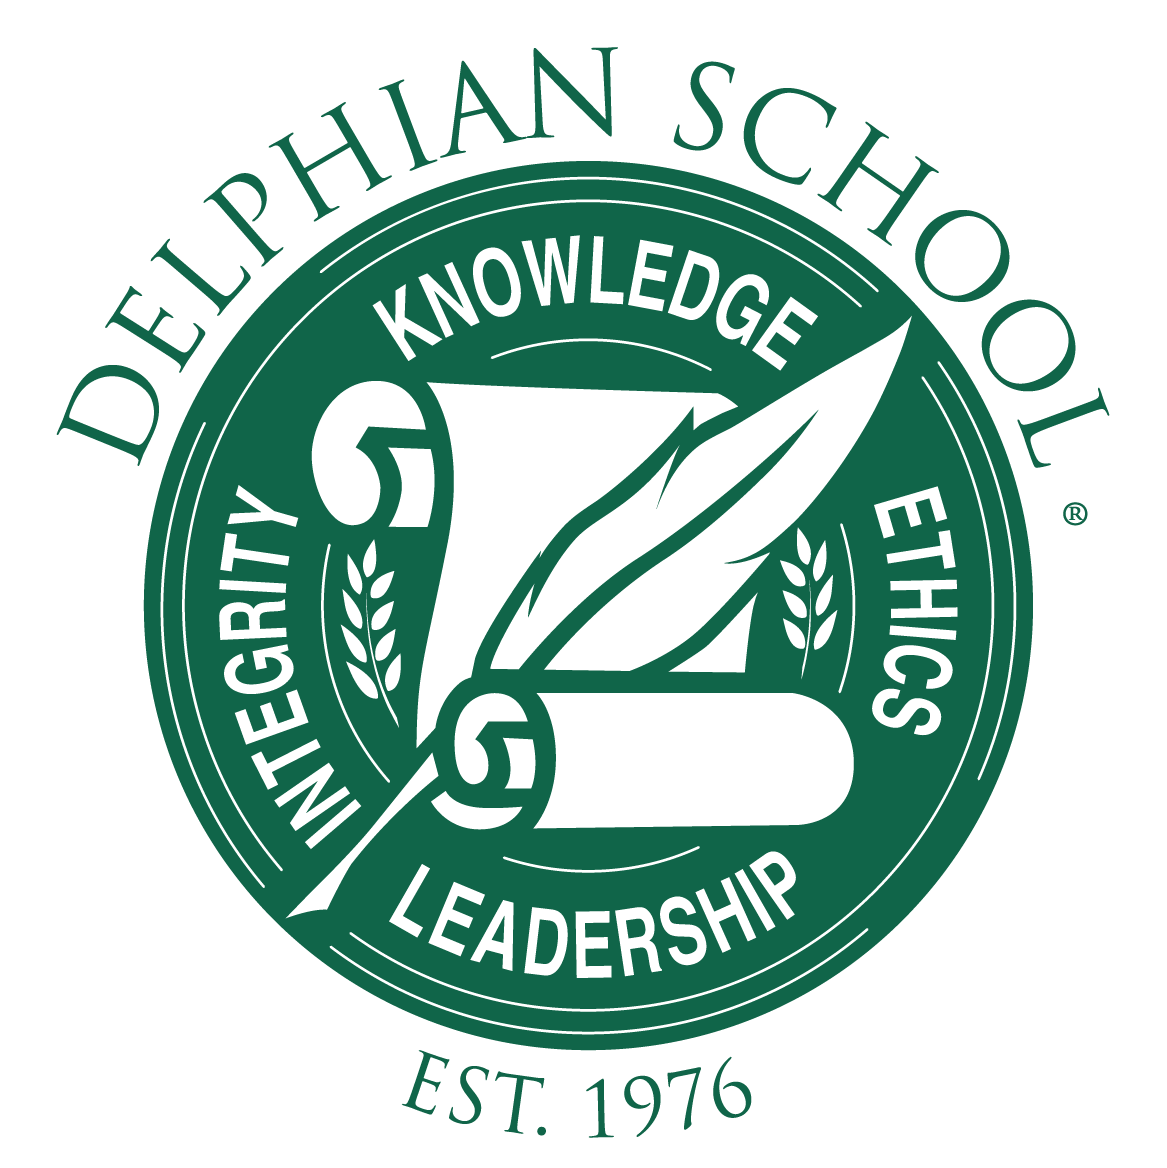 The Delphian School logo